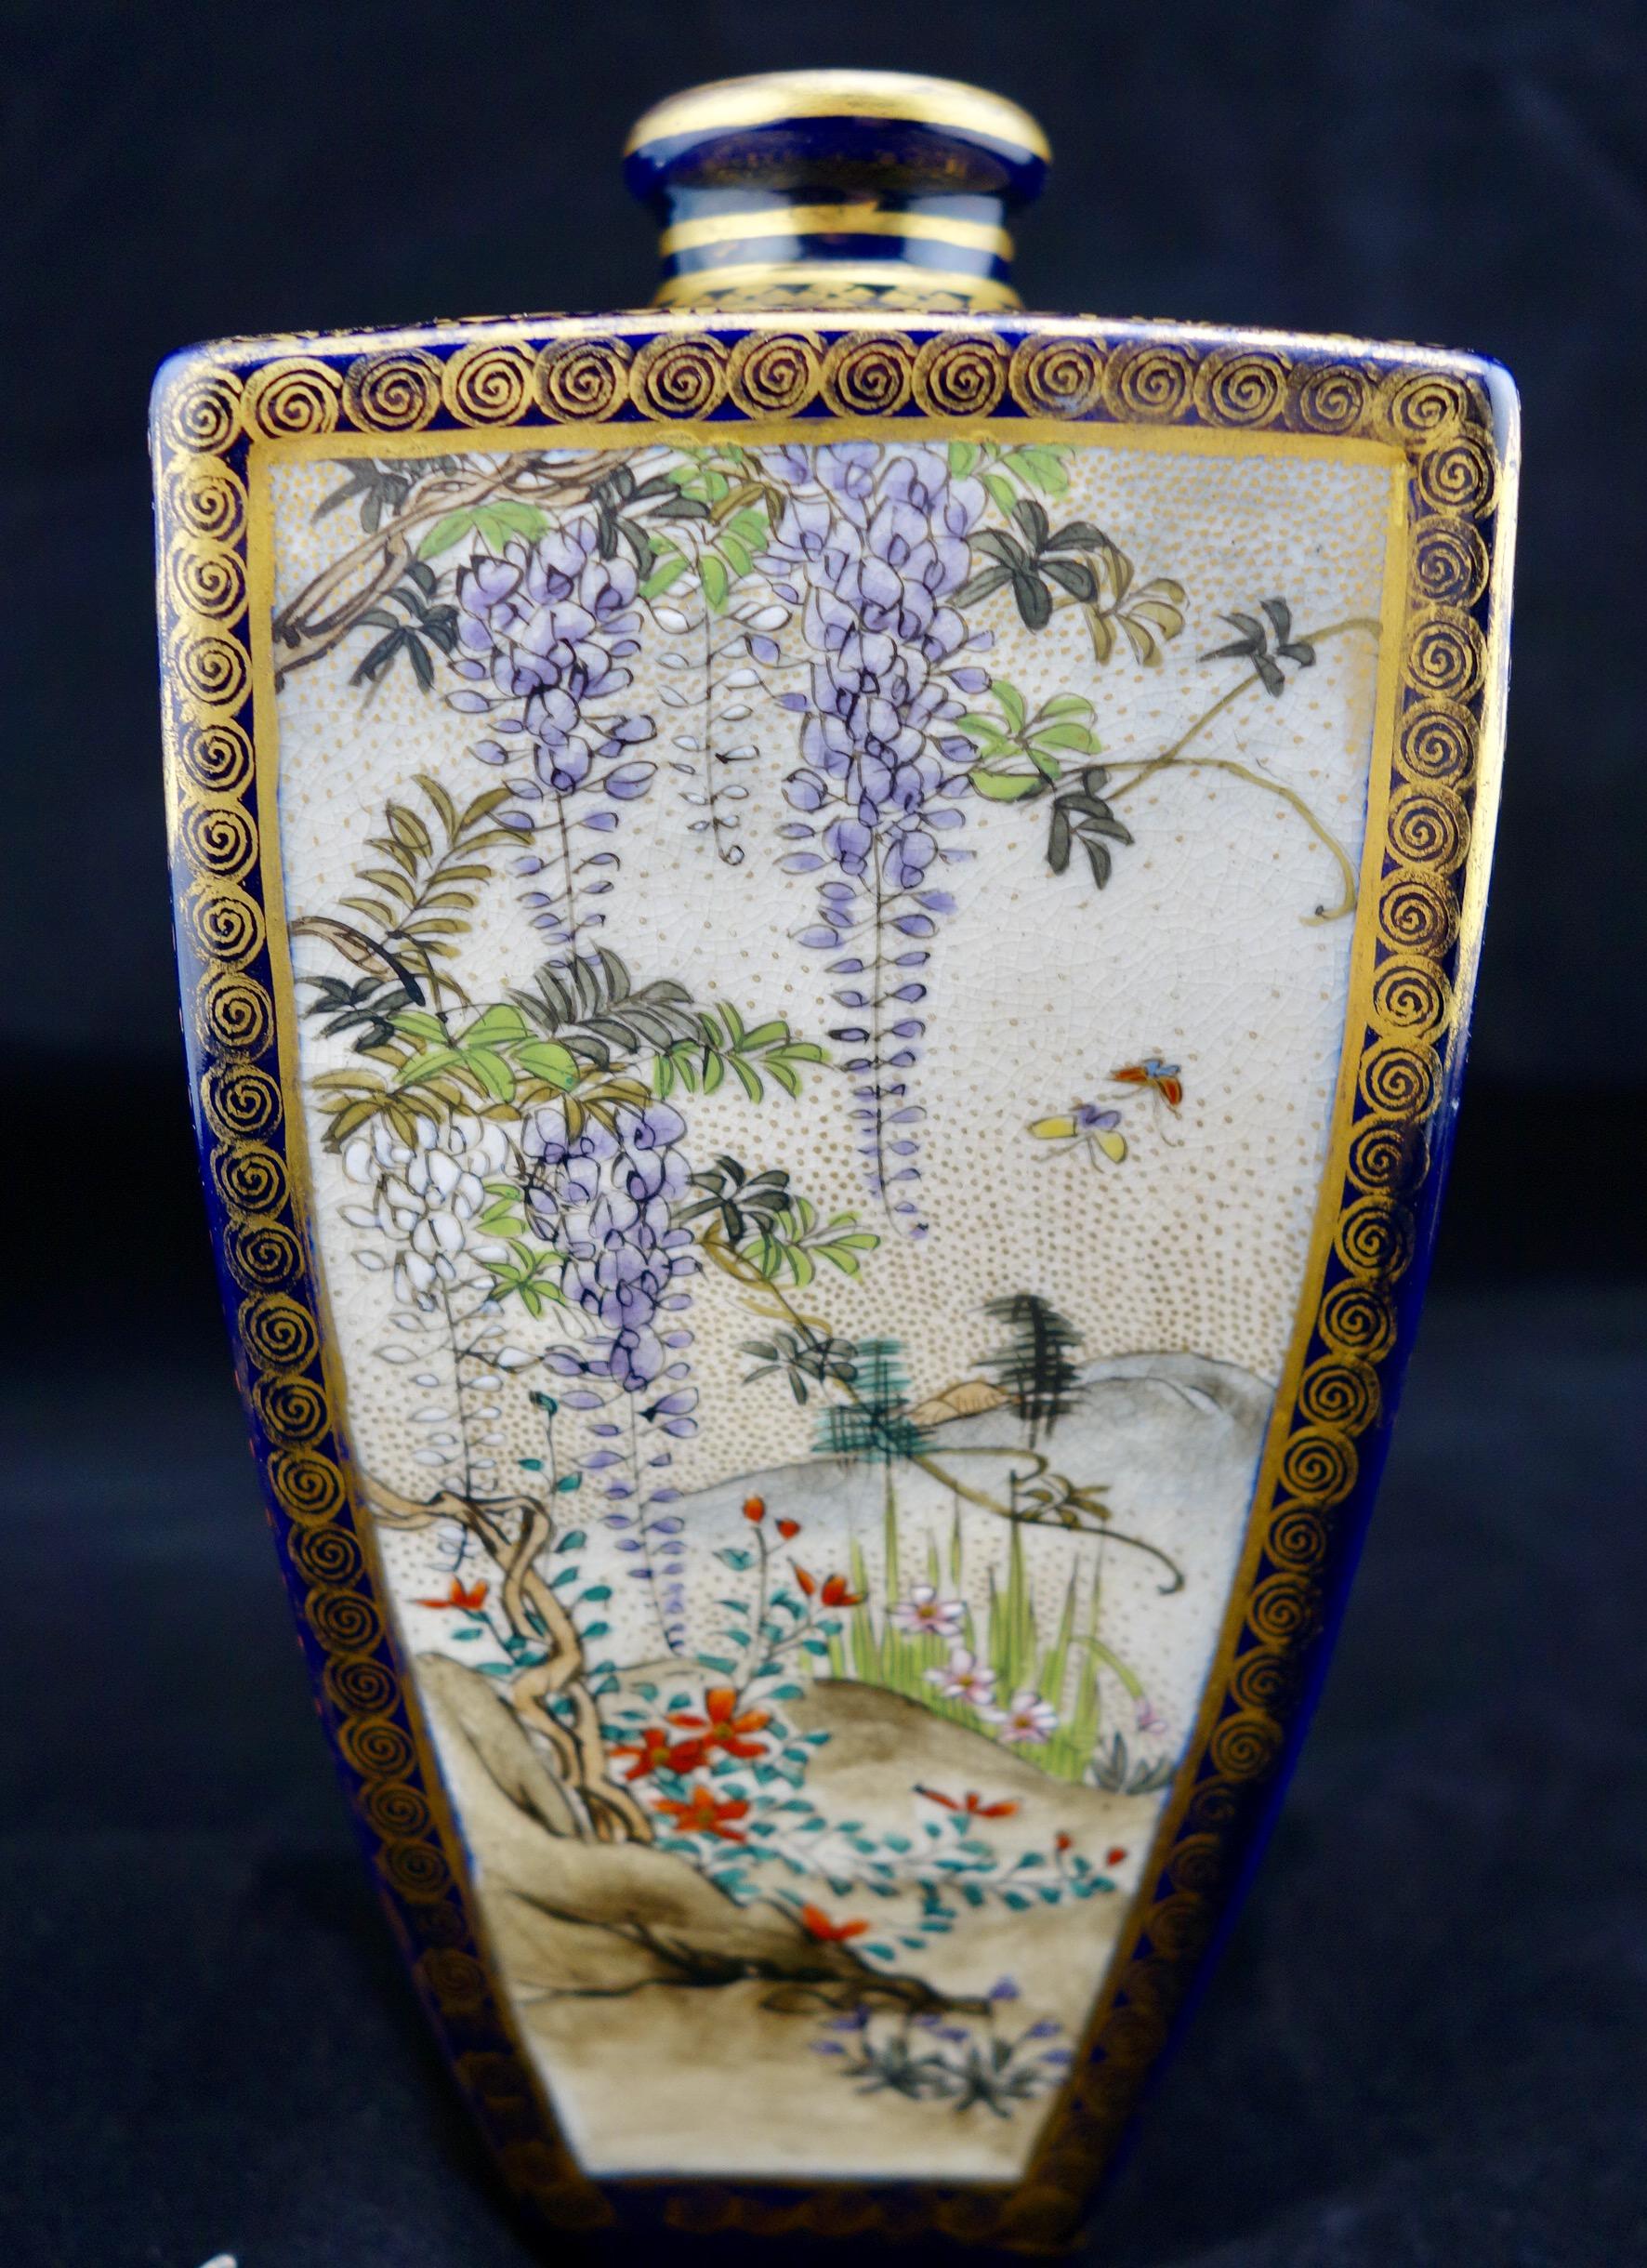 Japanische Meiji-Satsuma-Vase in Polygonform mit vier Feldern. Jede Tafel zeigt eine andere Szene. Feine Vergoldung und Handemaillierung. Auf der Unterseite mit shimadzu mon markiert.